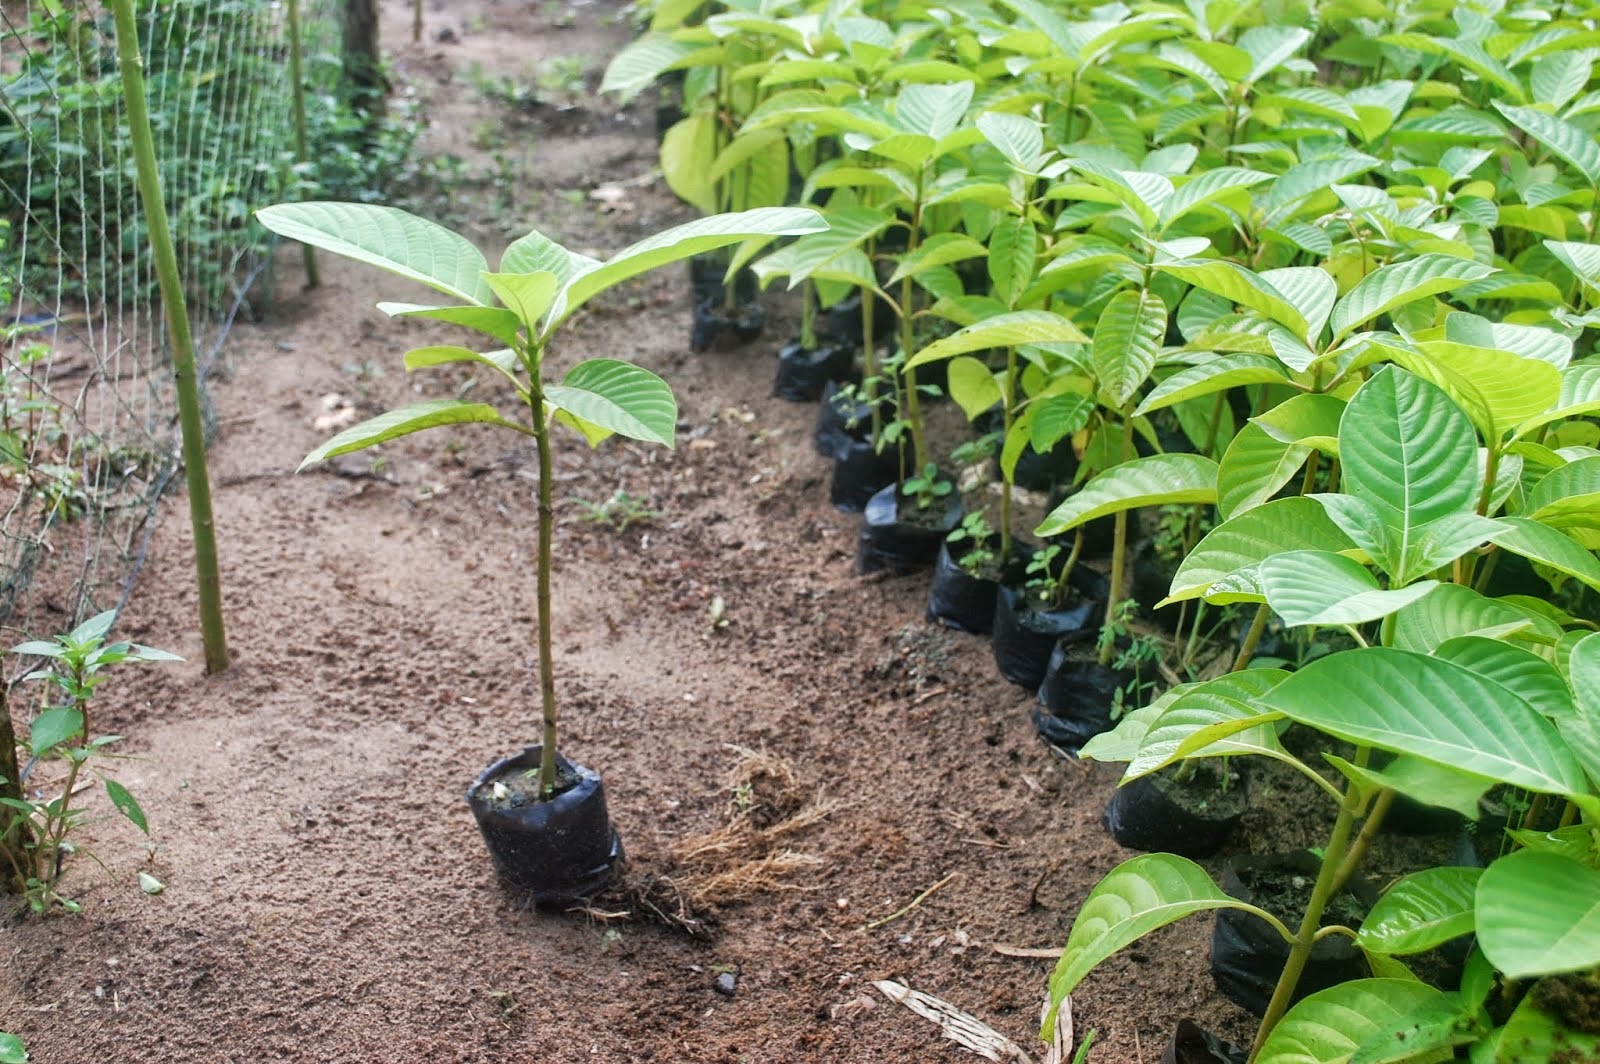 Giống cây trồng mới là một dạng tài sản trí tuệ được bảo hộ theo Luật Sở hữu trí tuệ Việt Nam